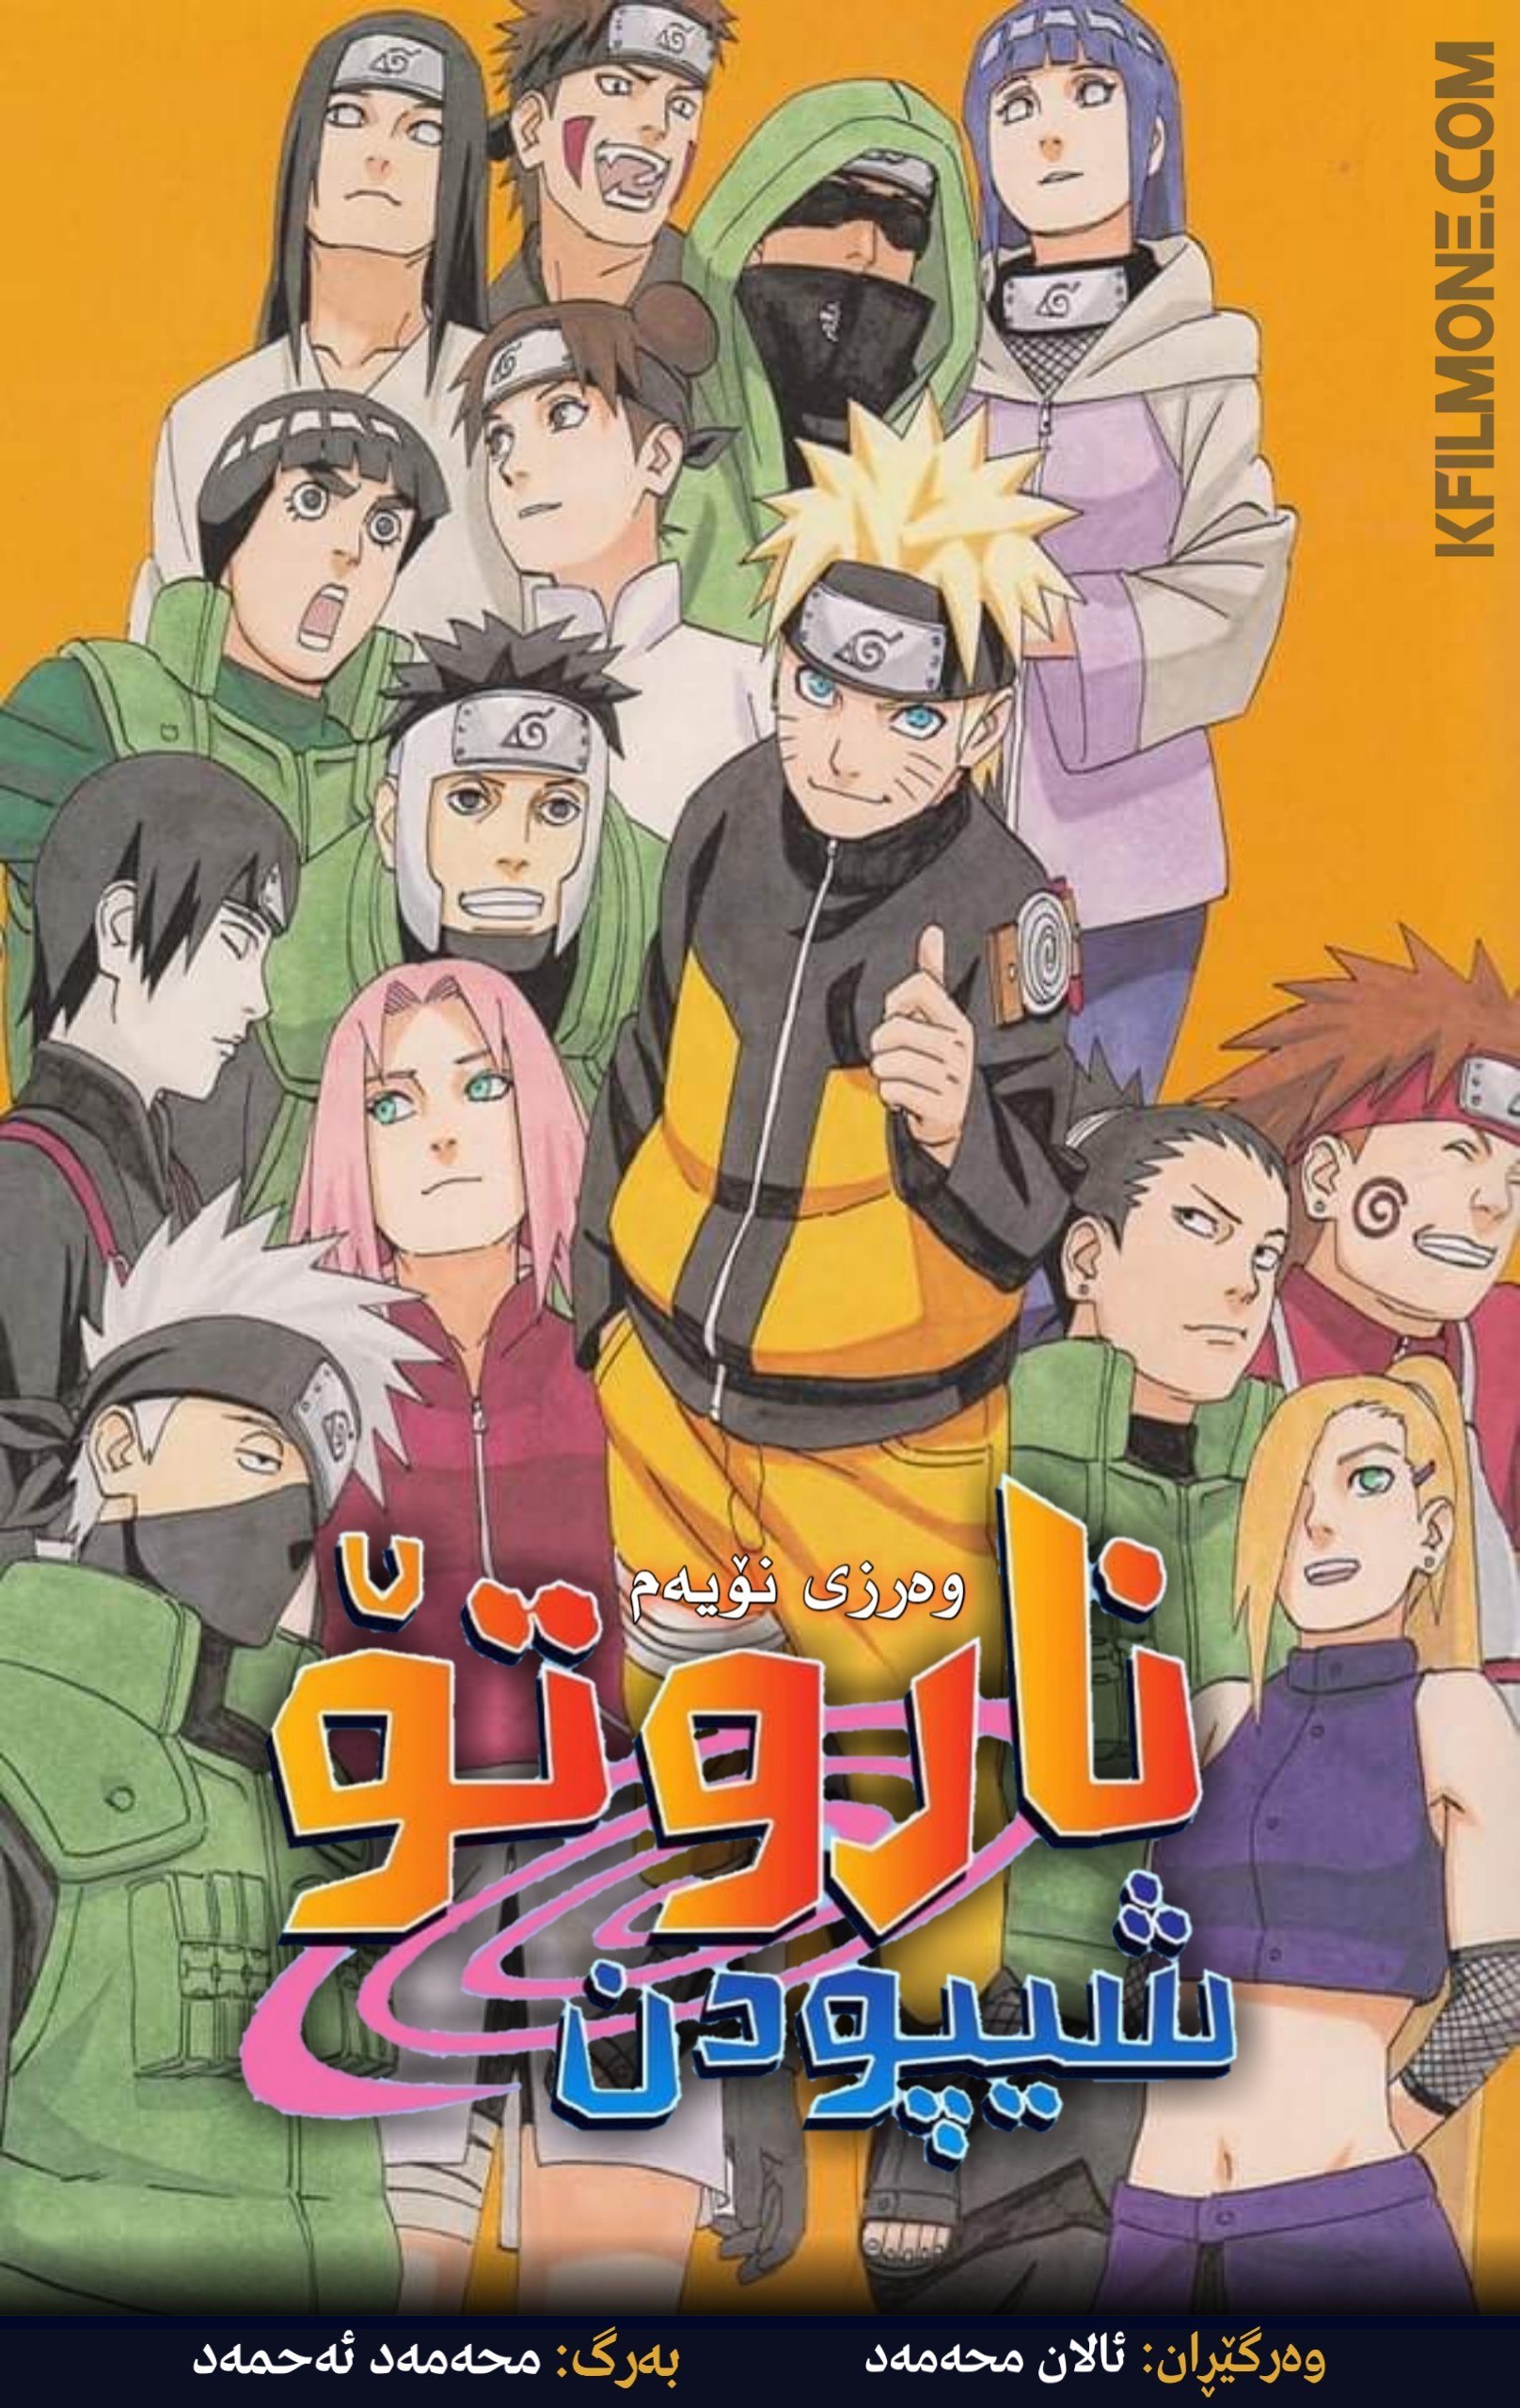 Naruto: Shippuden S09